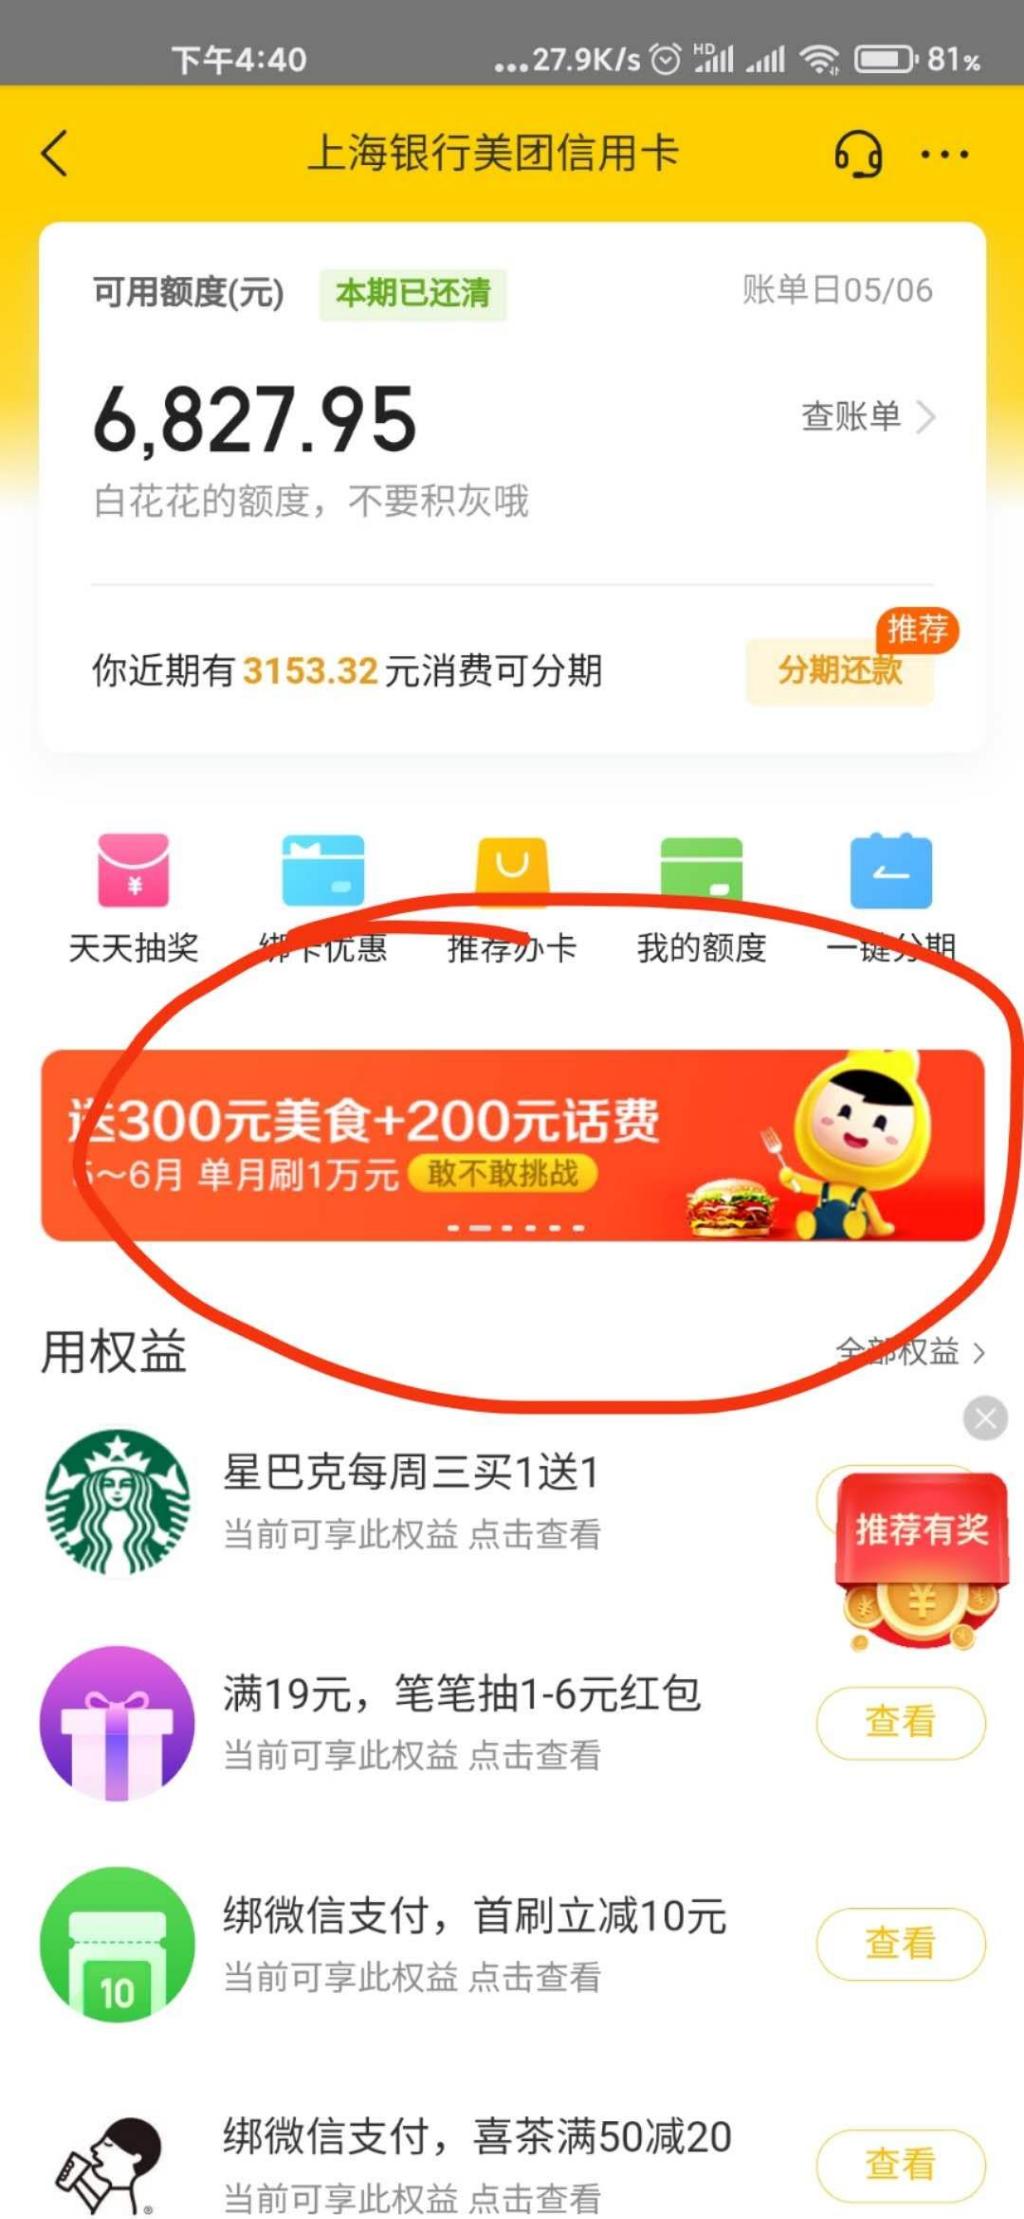 美团信用卡5月700元羊毛入口-惠小助(52huixz.com)